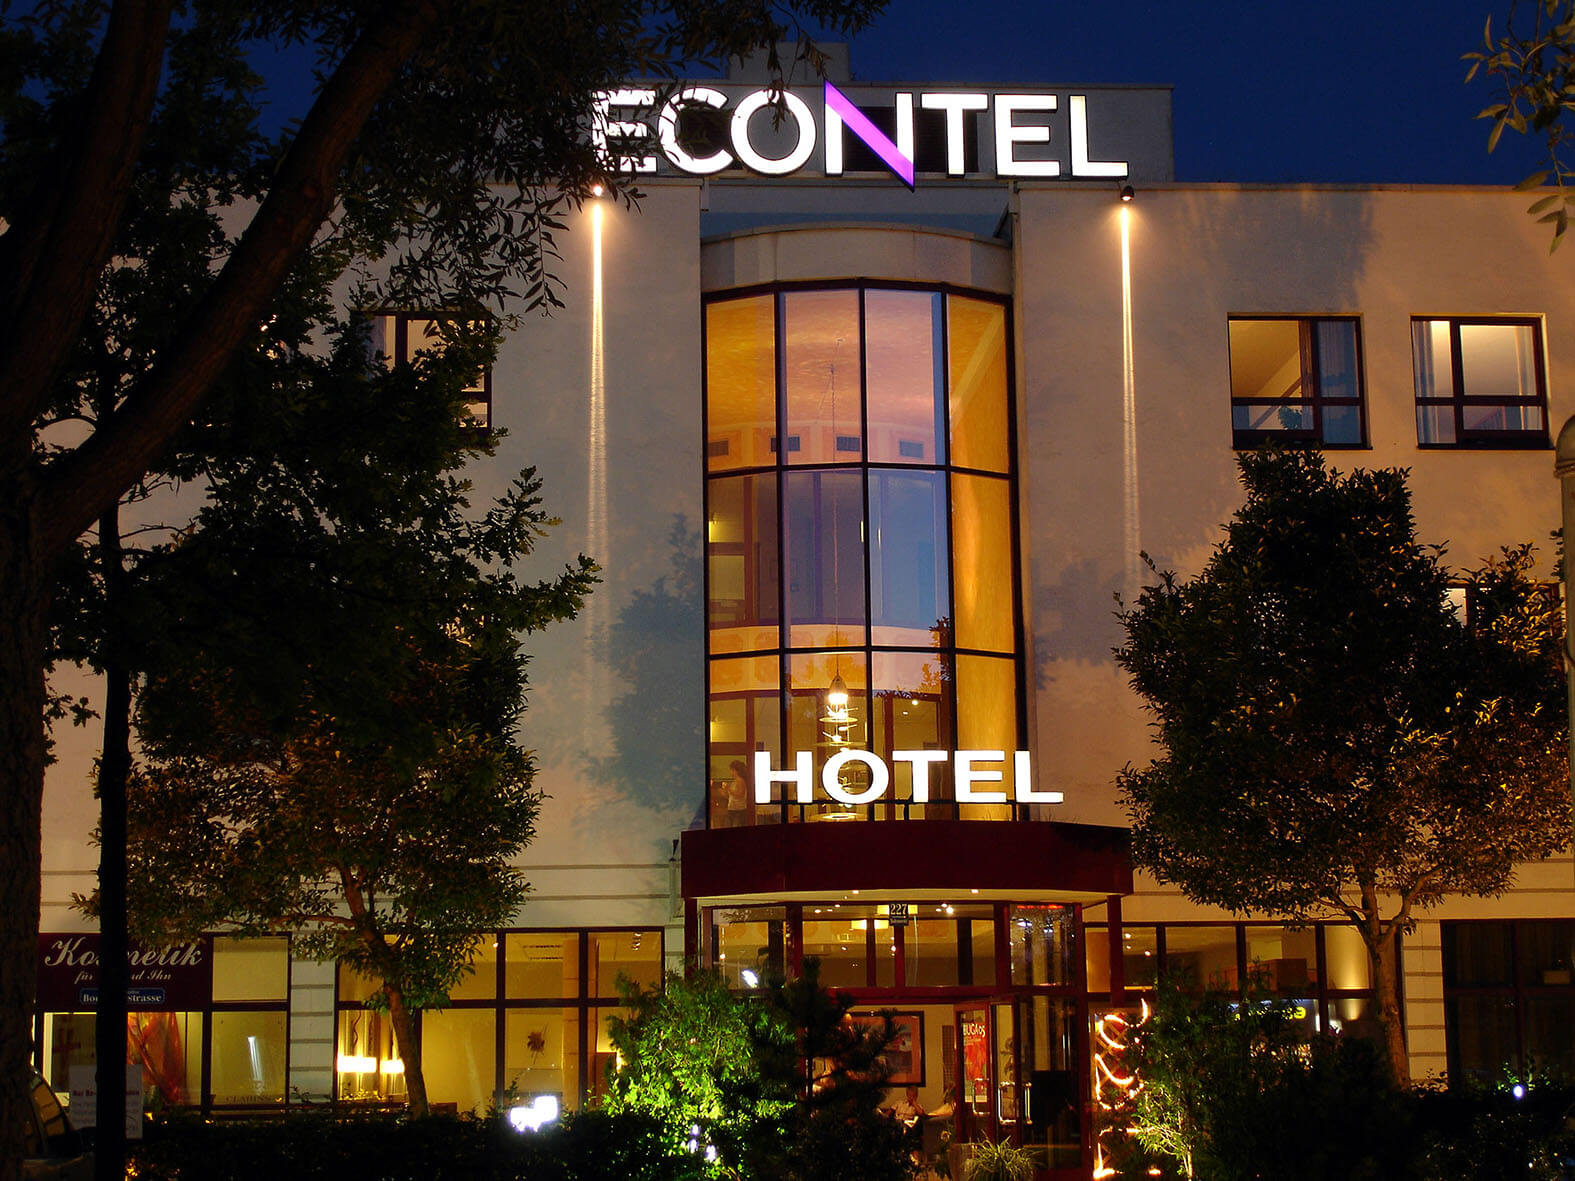 ECONTEL HOTEL, München.
